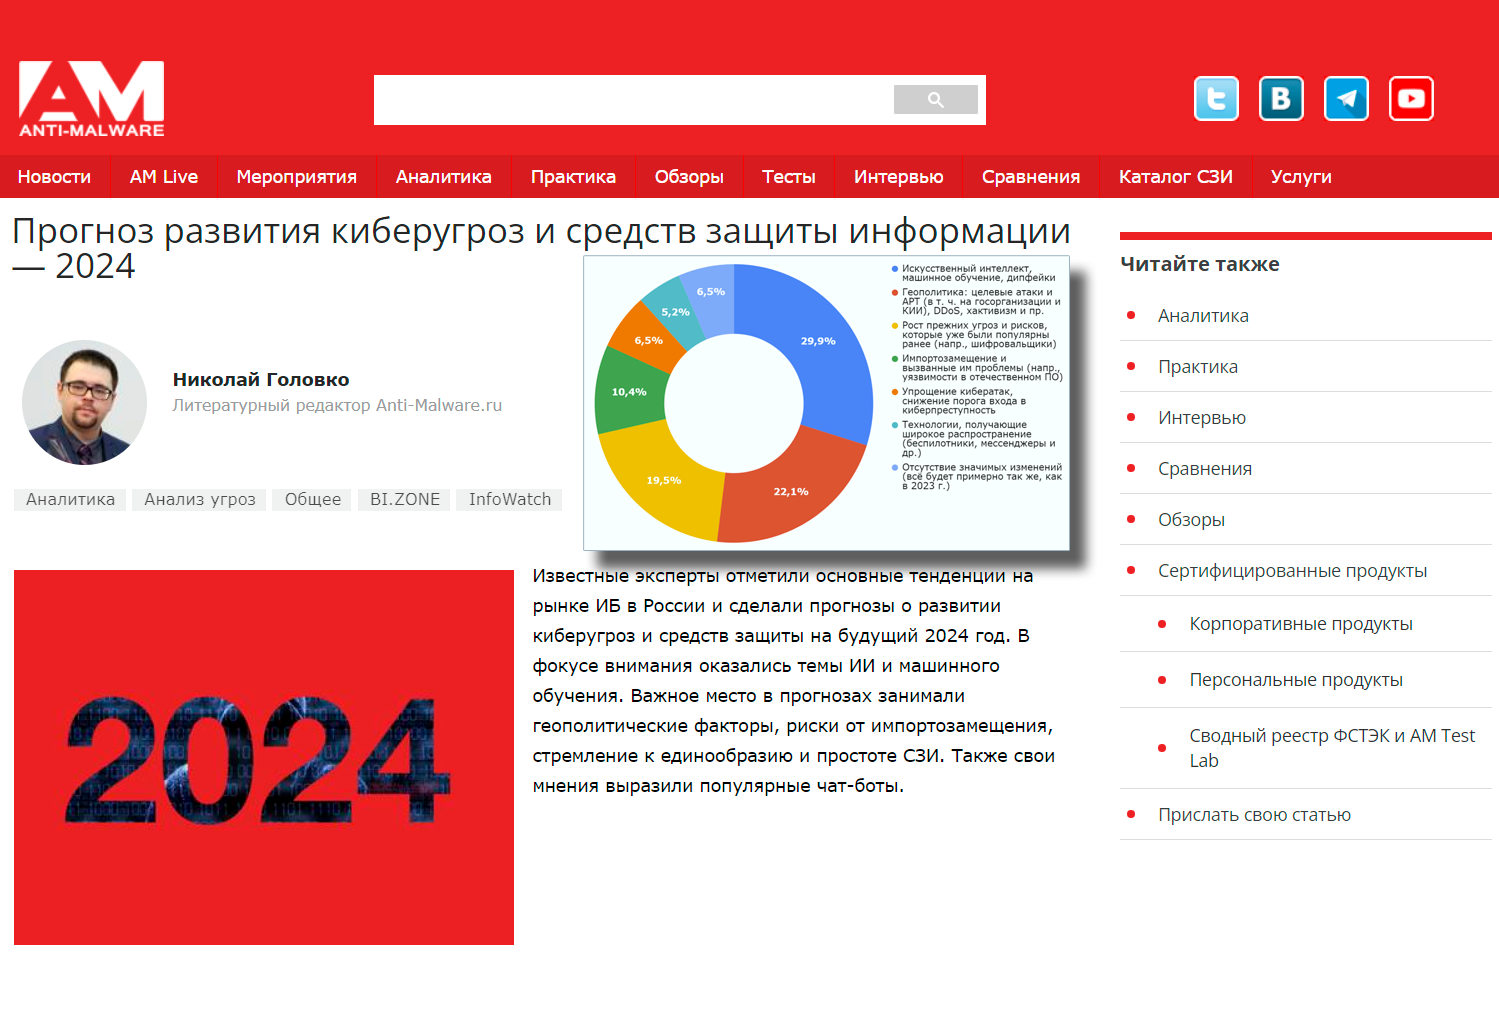 Прогноз развития киберугроз и средств защиты информации в 2024 году - аналитика от anti-malware.ru